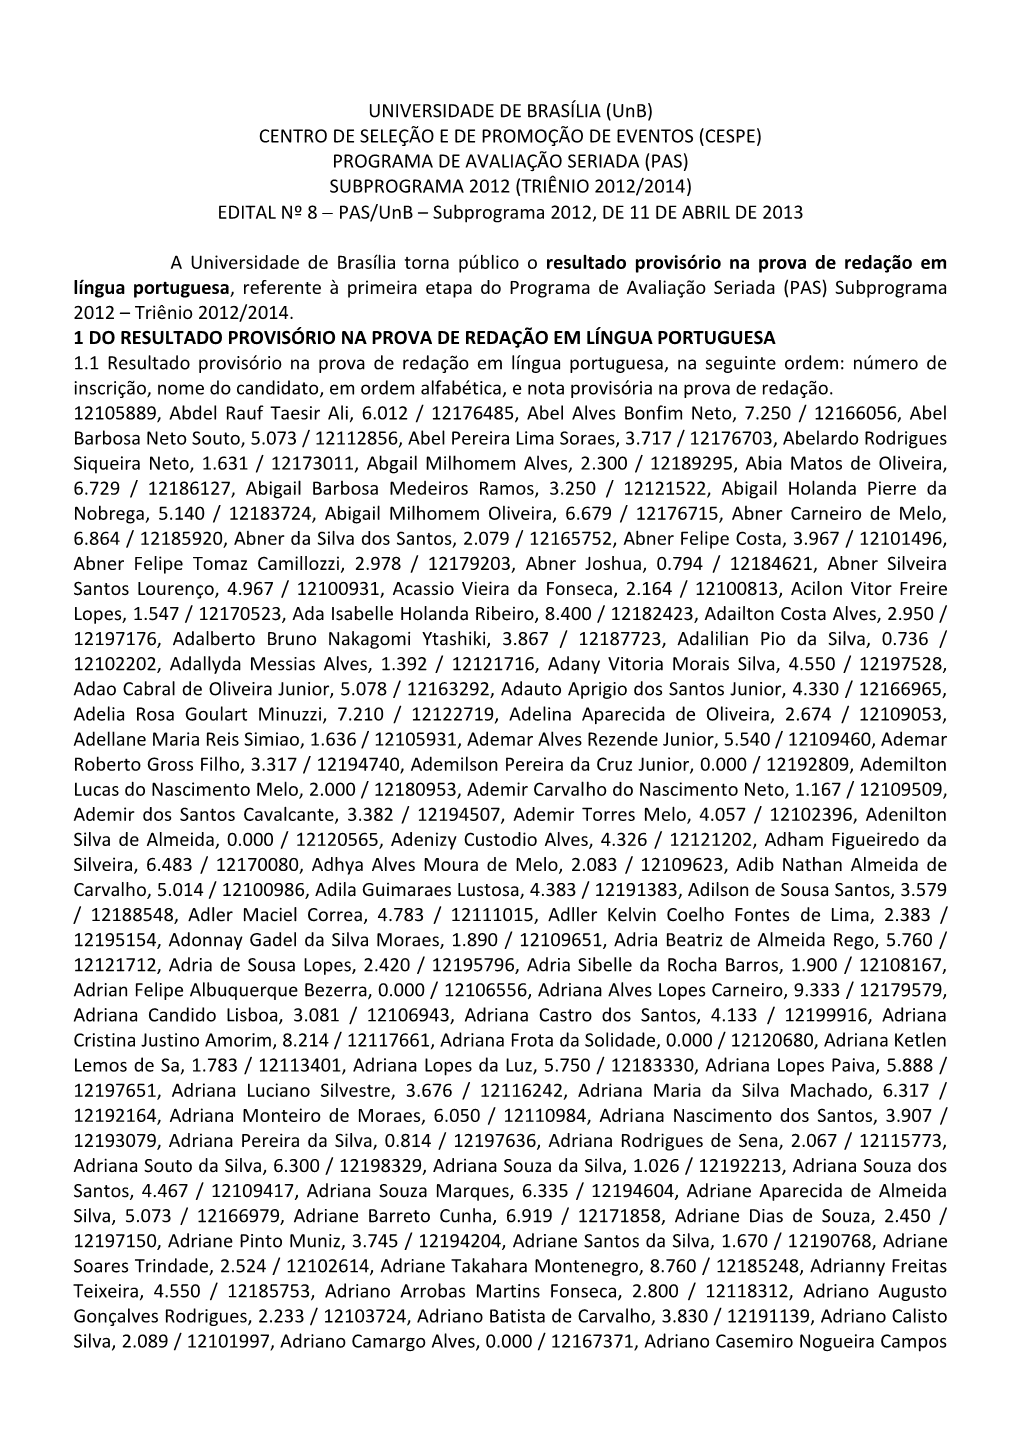 PROGRAMA DE AVALIAÇÃO SERIADA (PAS) SUBPROGRAMA 2012 (TRIÊNIO 2012/2014) EDITAL Nº 8  PAS/Unb – Subprograma 2012, DE 11 DE ABRIL DE 2013